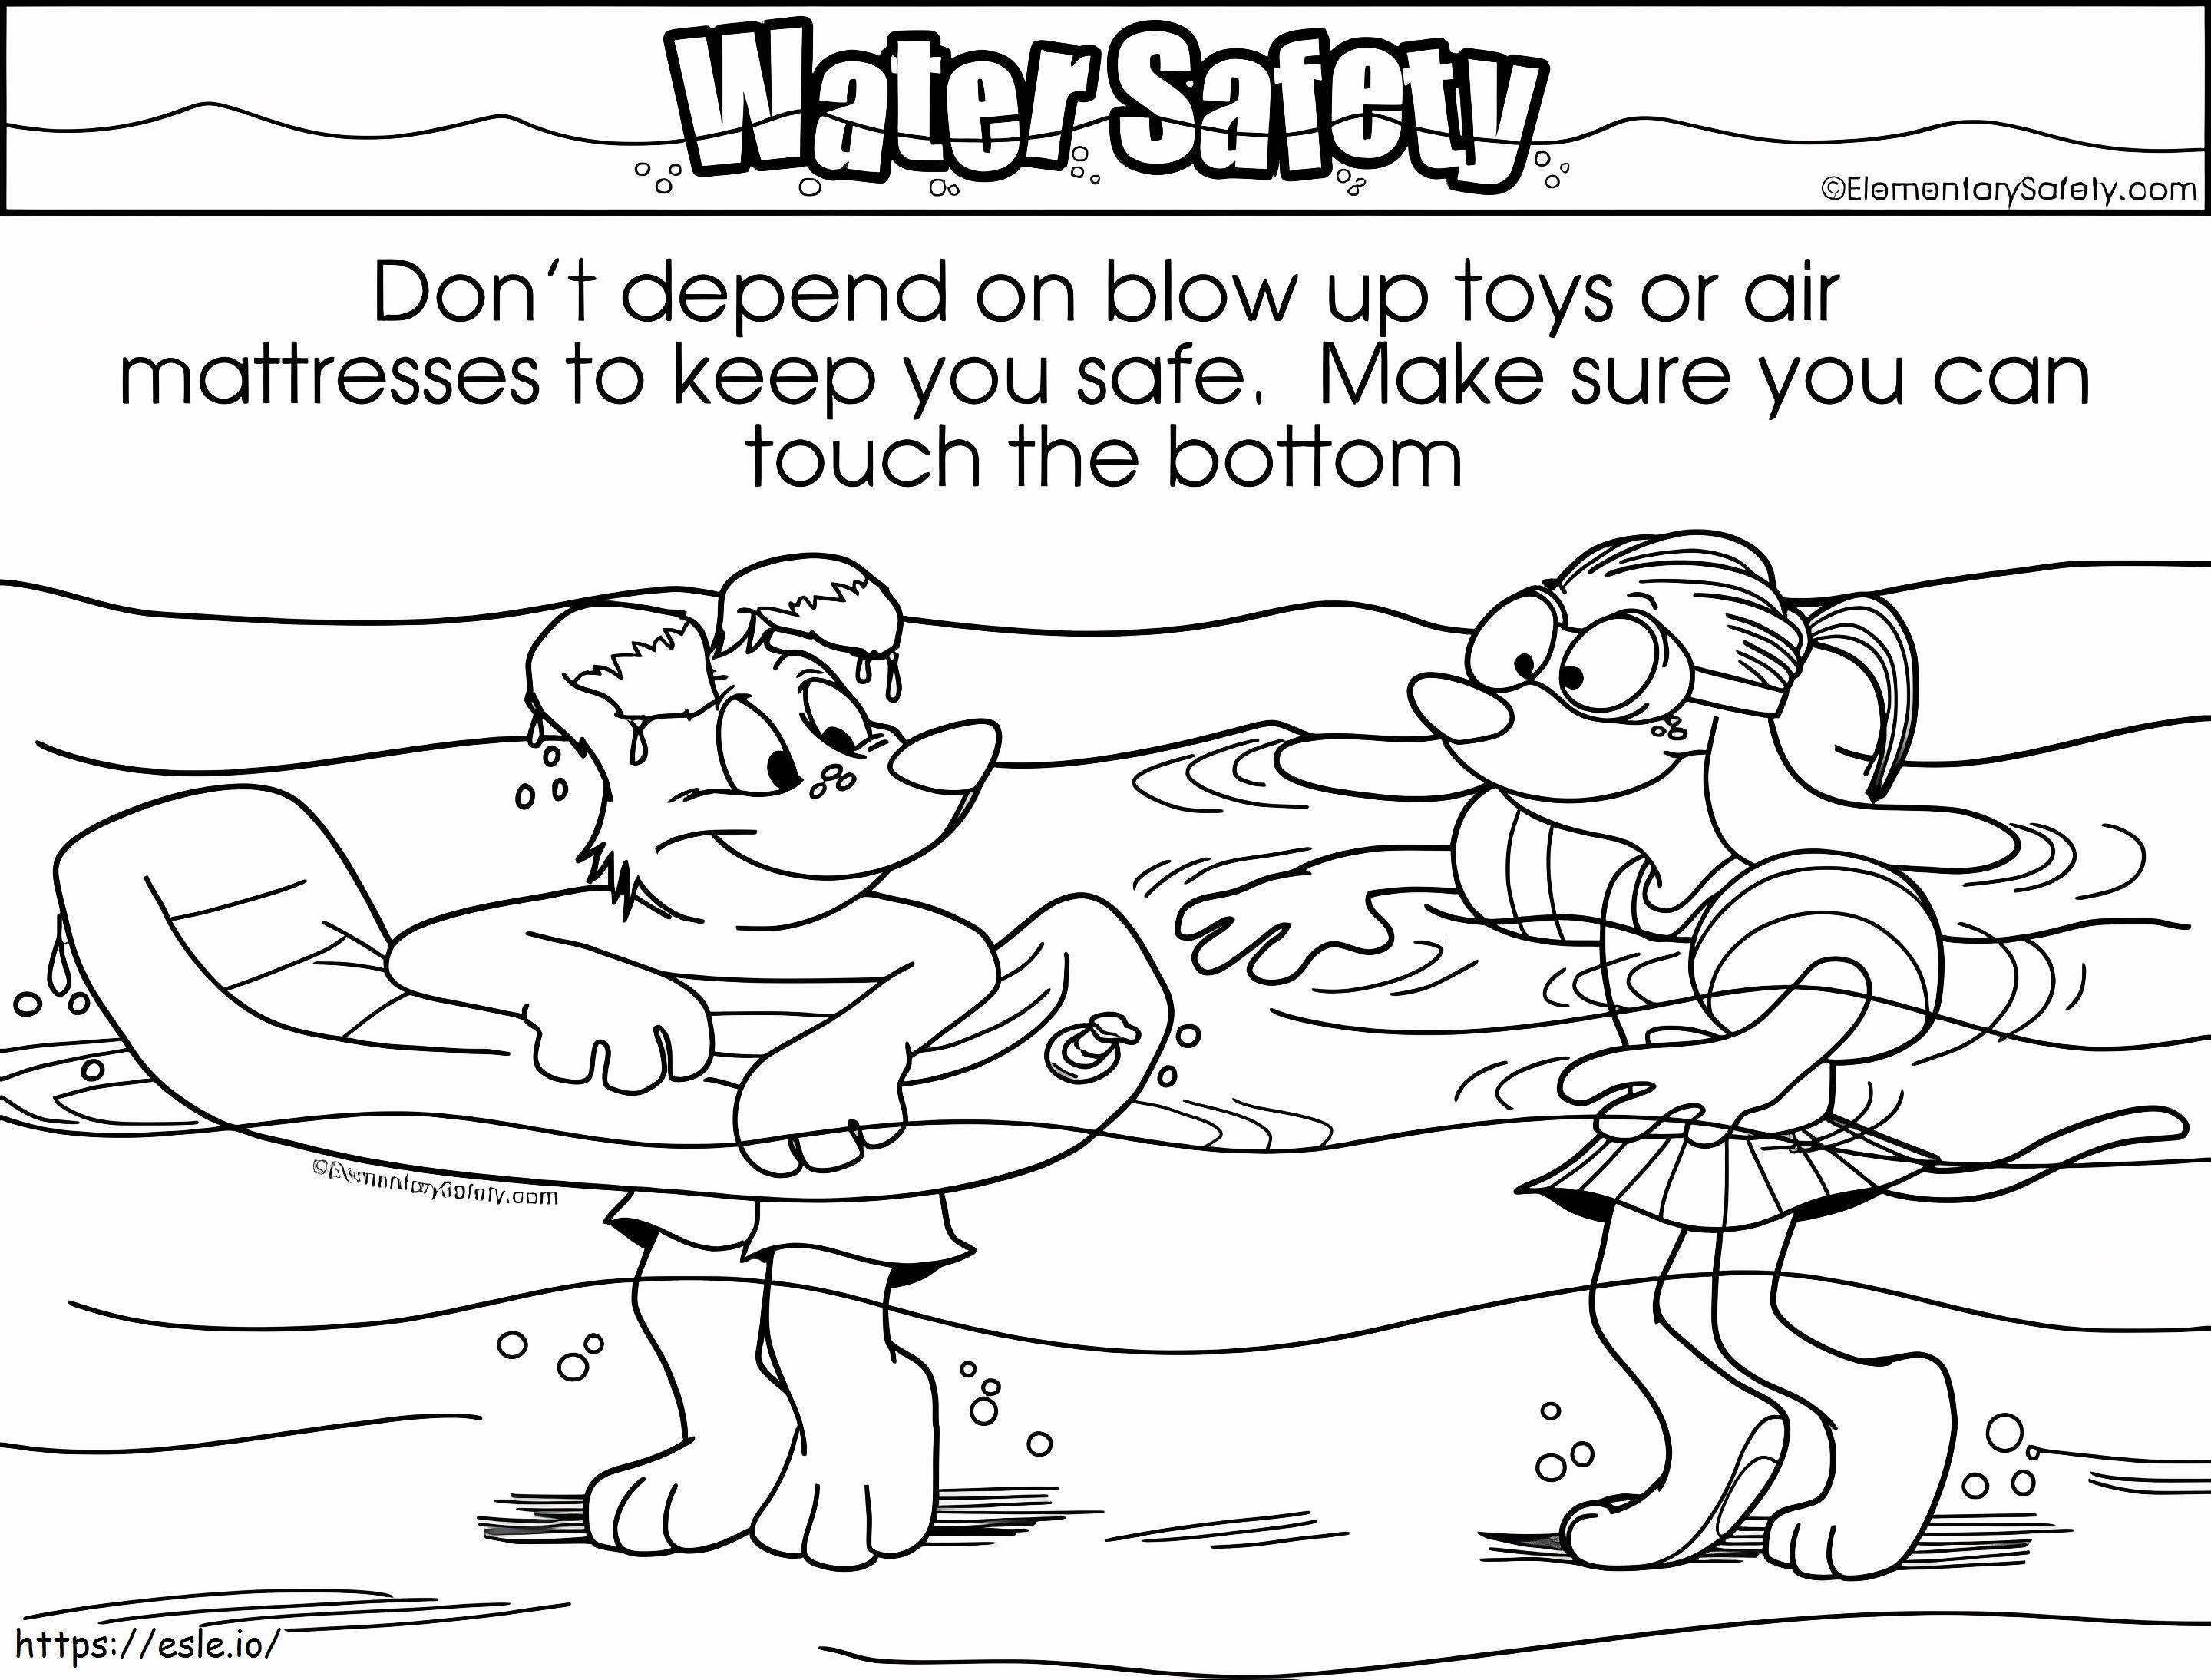 Blow Up Toy Safety kifestő